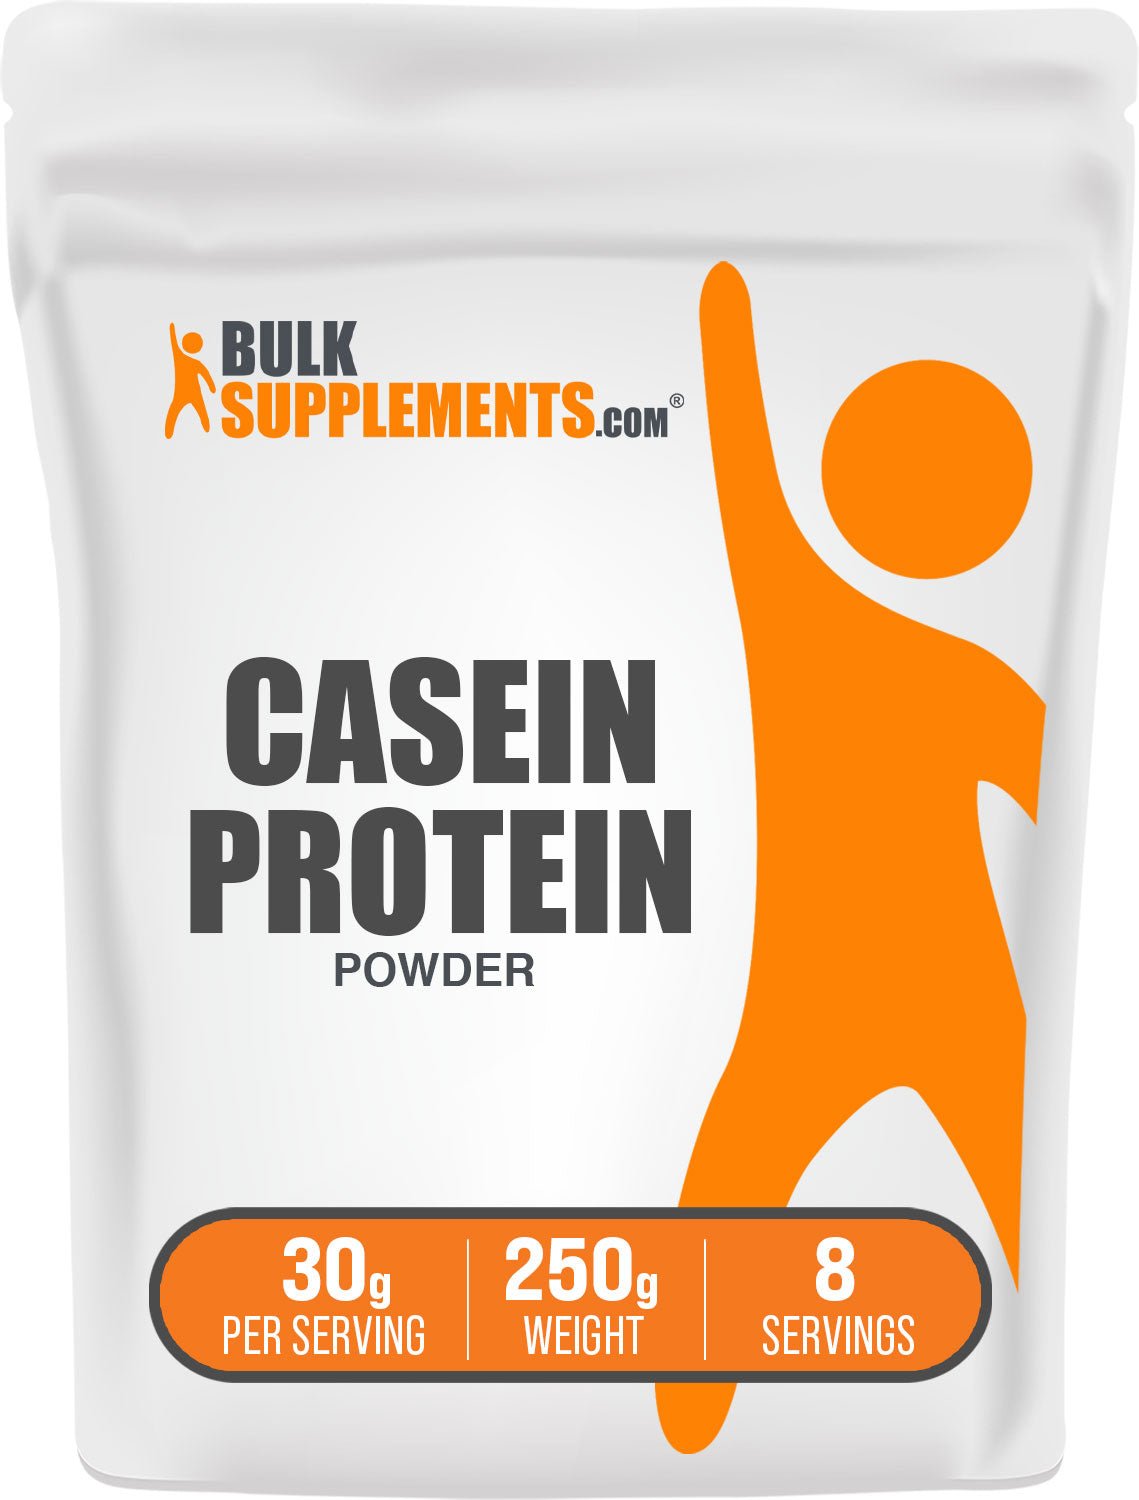 250g casein protein powder